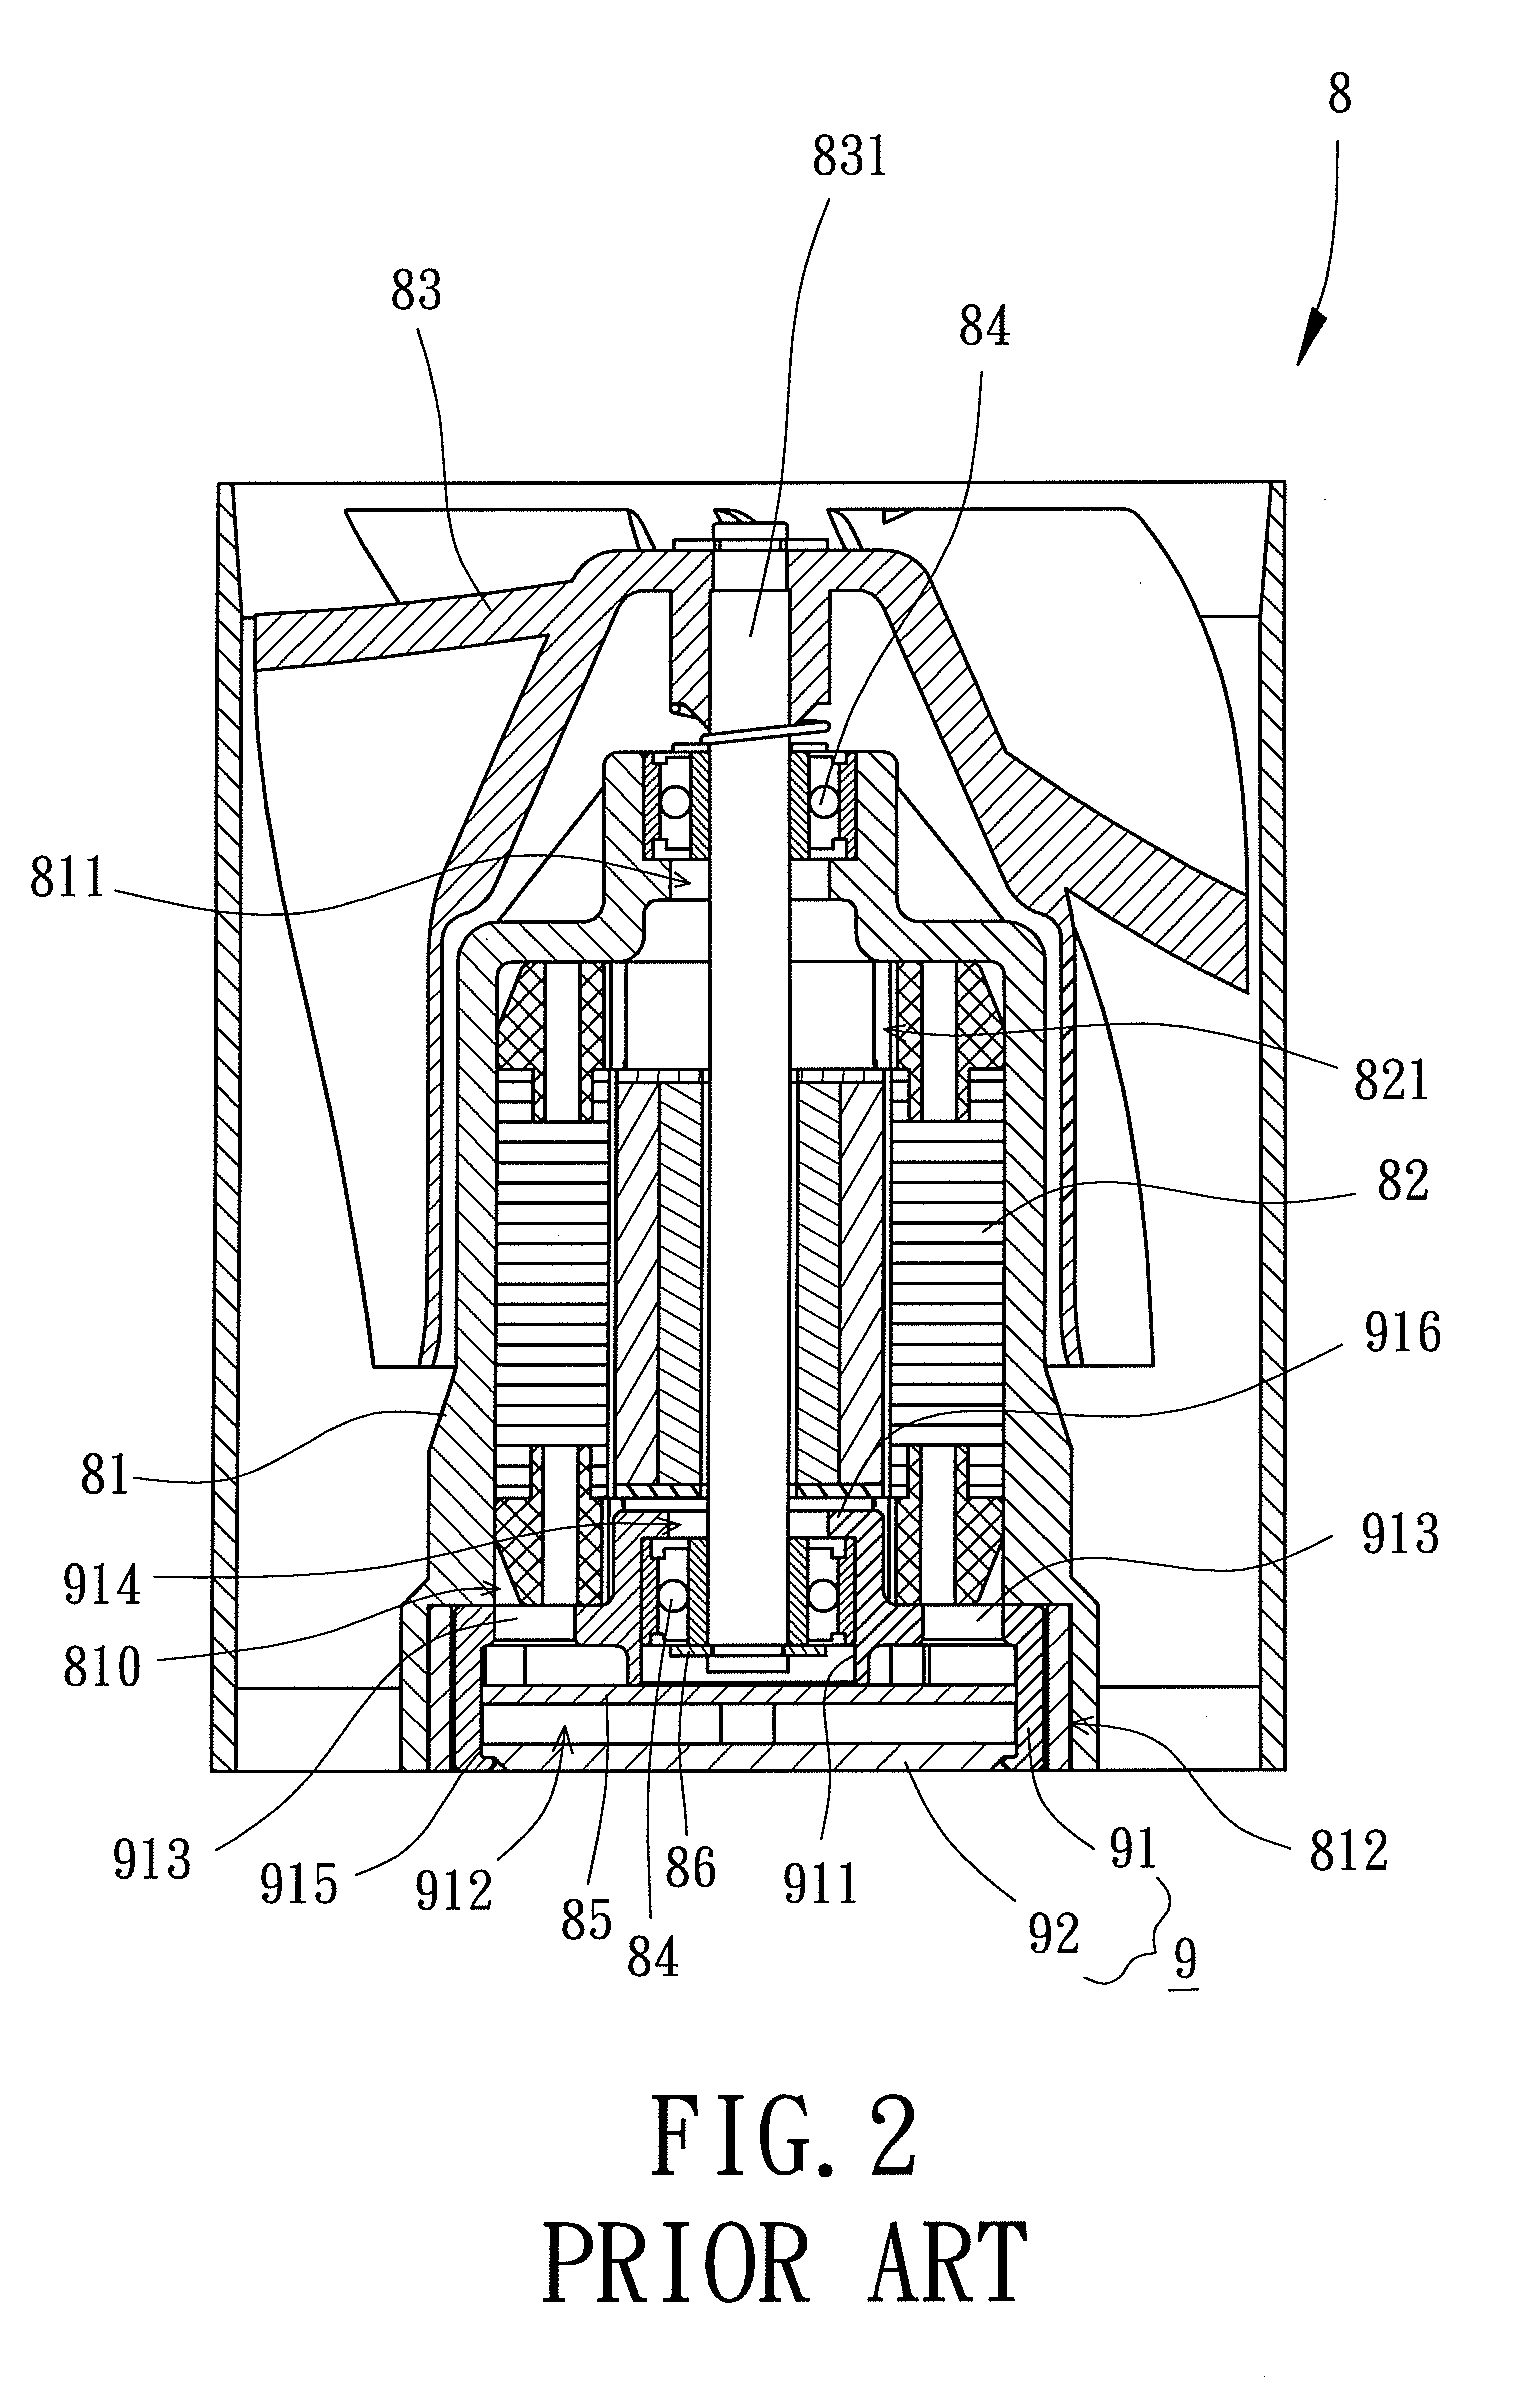 Inner-Rotor-Type Motor